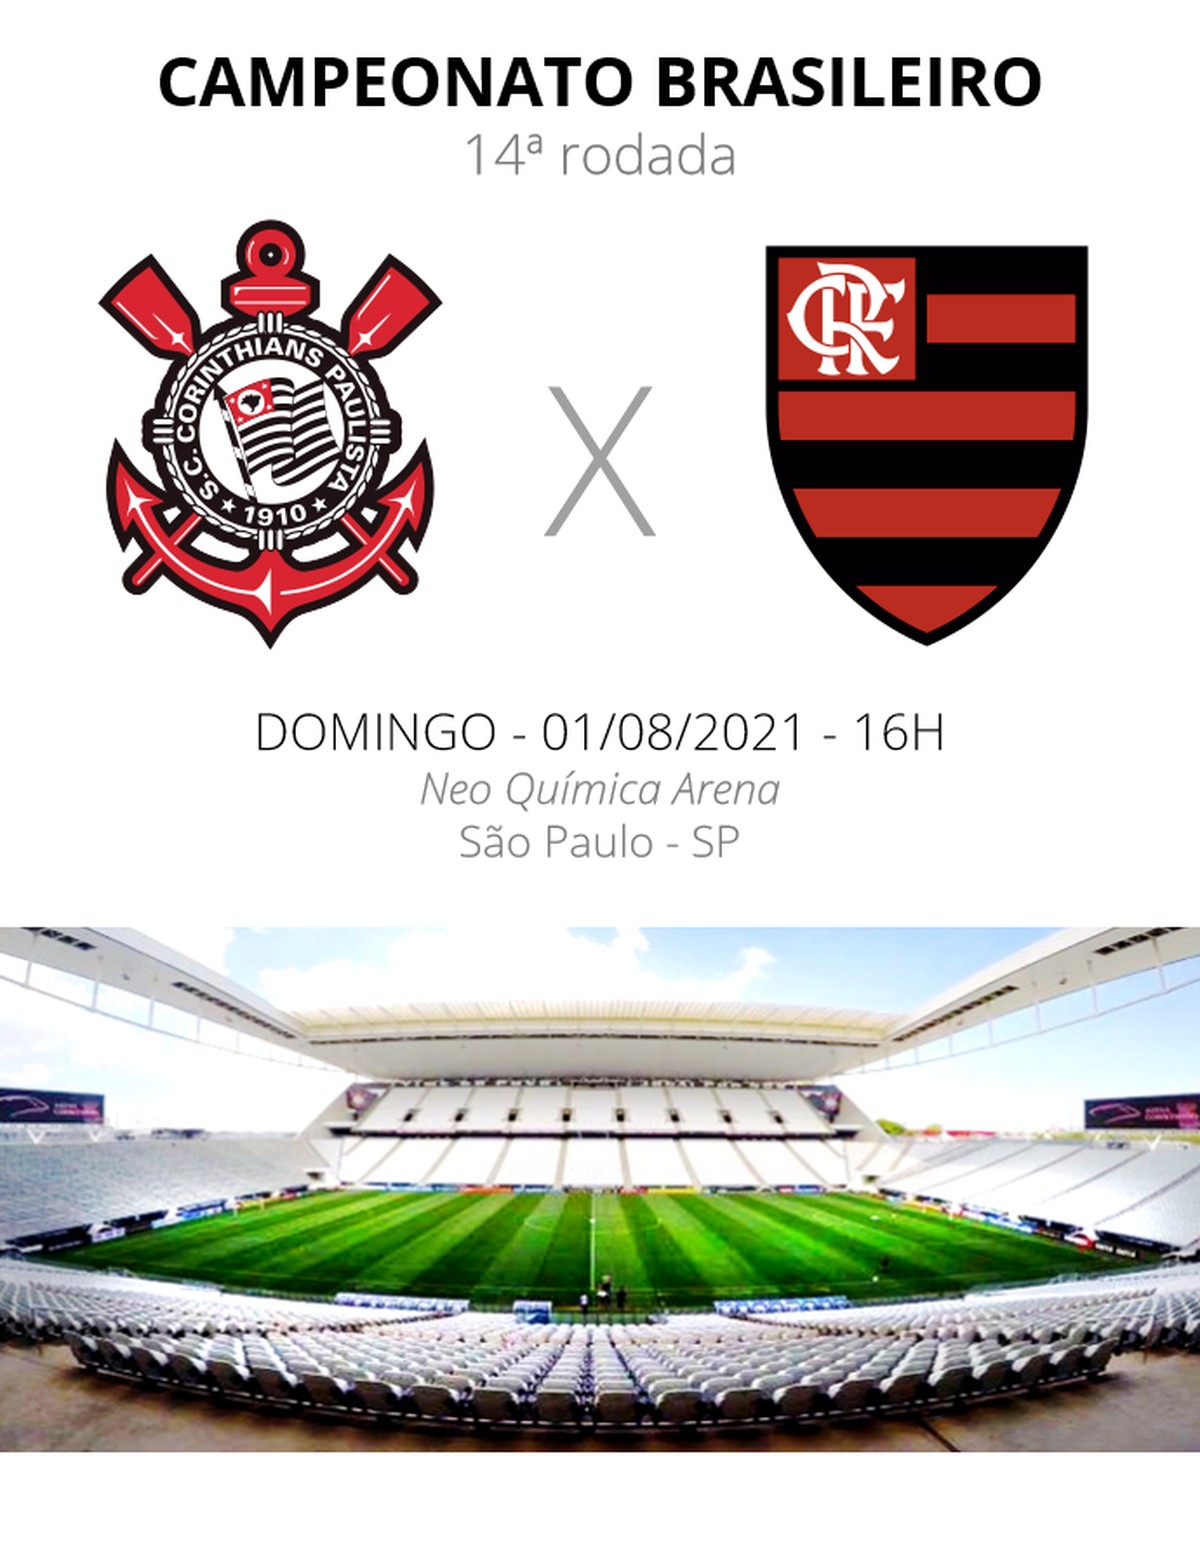 Corinthians Vs Flamengo - Corinthians VS. Flamengo (27/04/2014